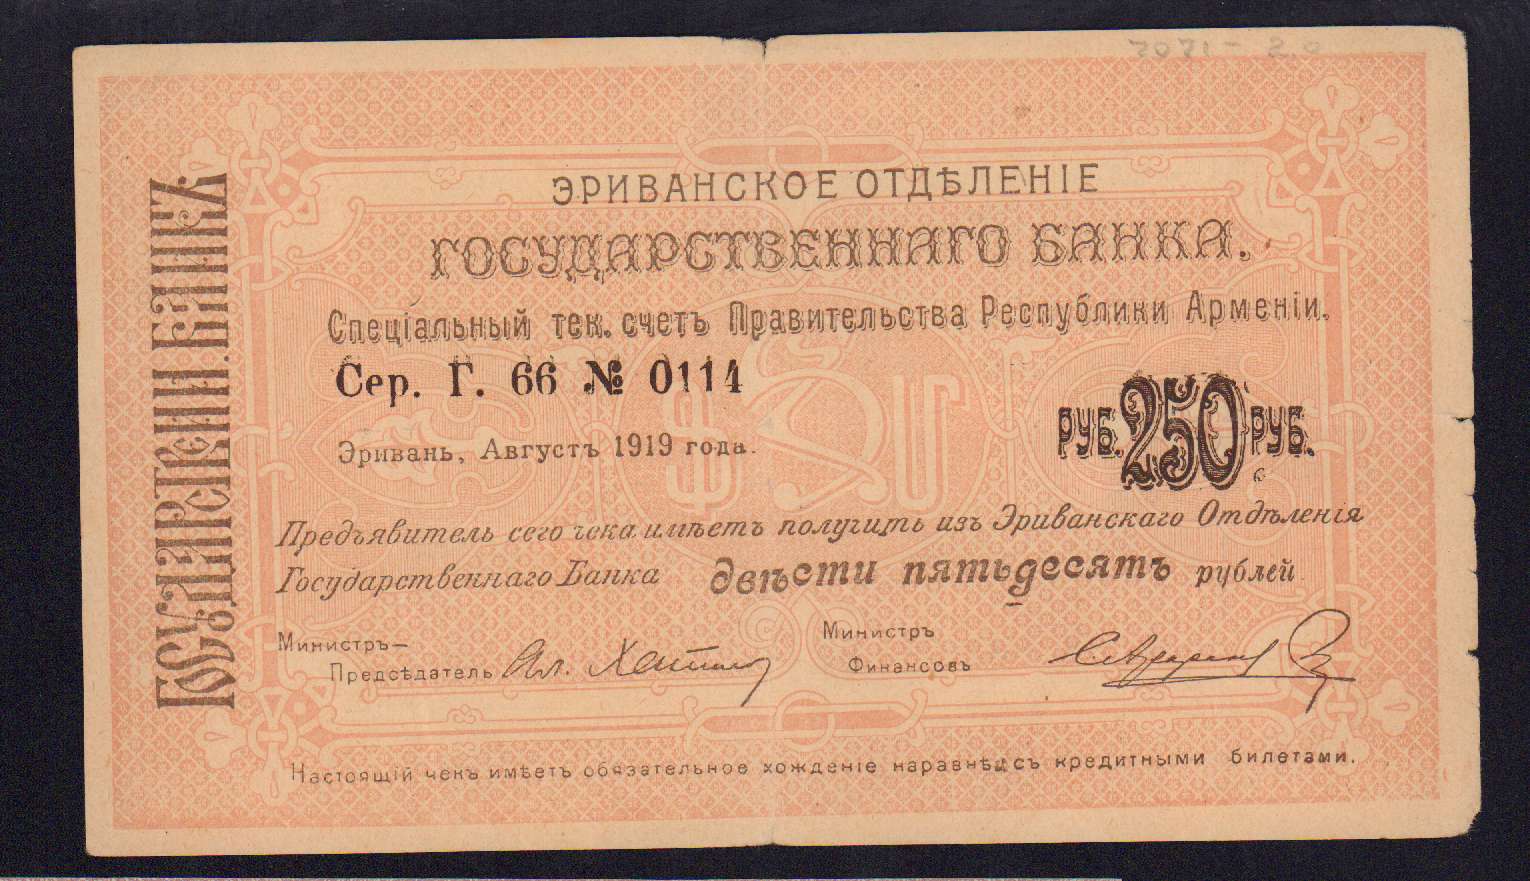 250 рублей билет. 1000 Рублей 1919 временное правительство. Расчетный чек 10000 рублей 1919.